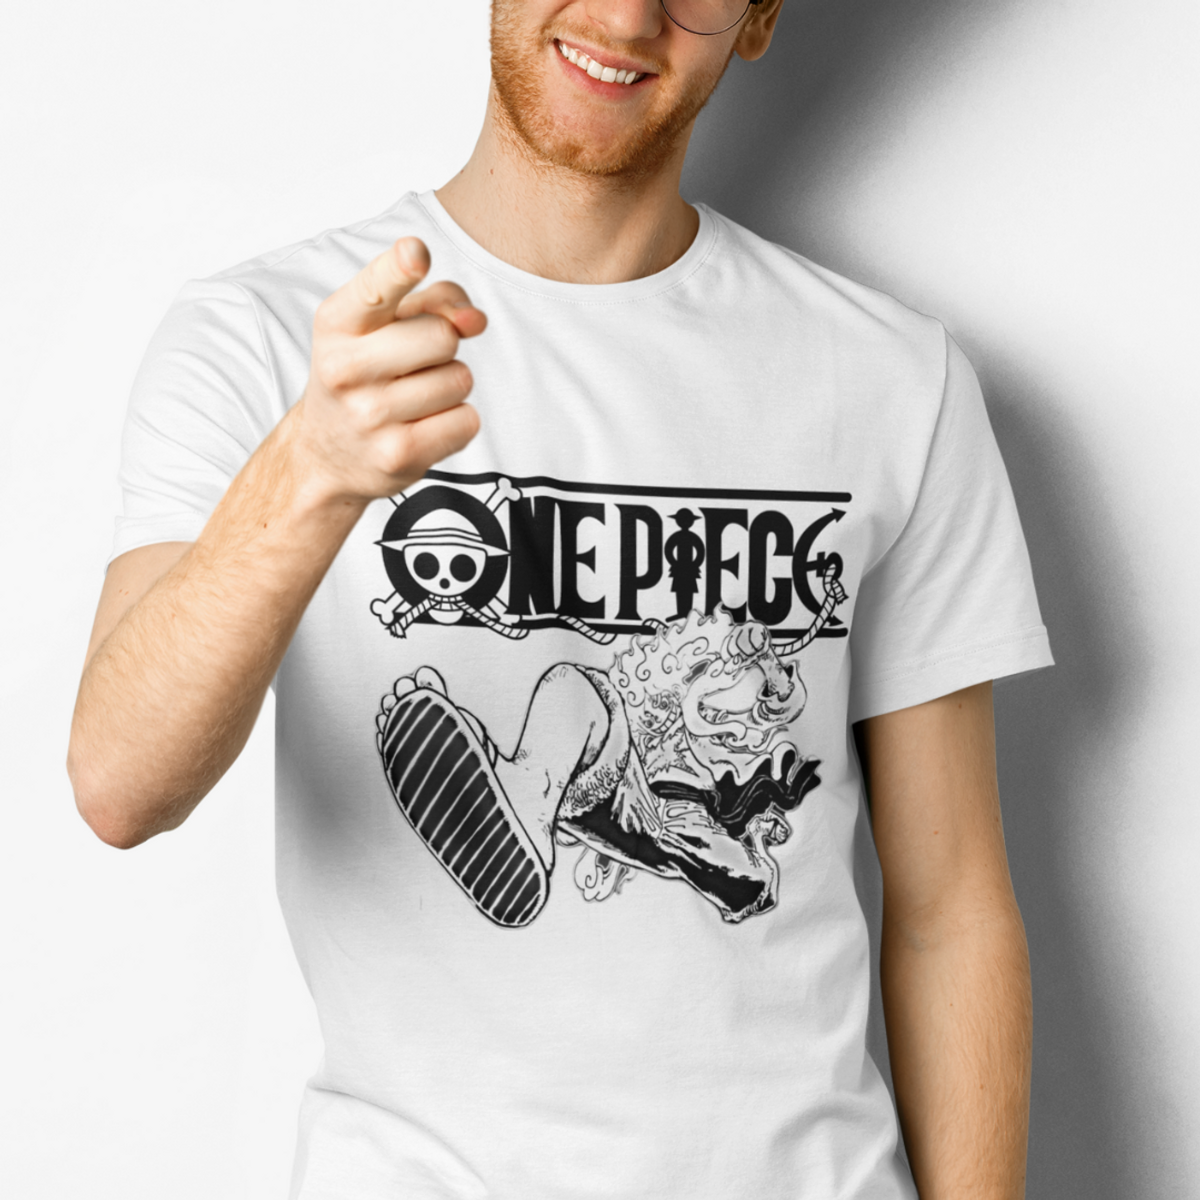 Nome do produto: Camiseta Quality One Piece Luffy Gear 5